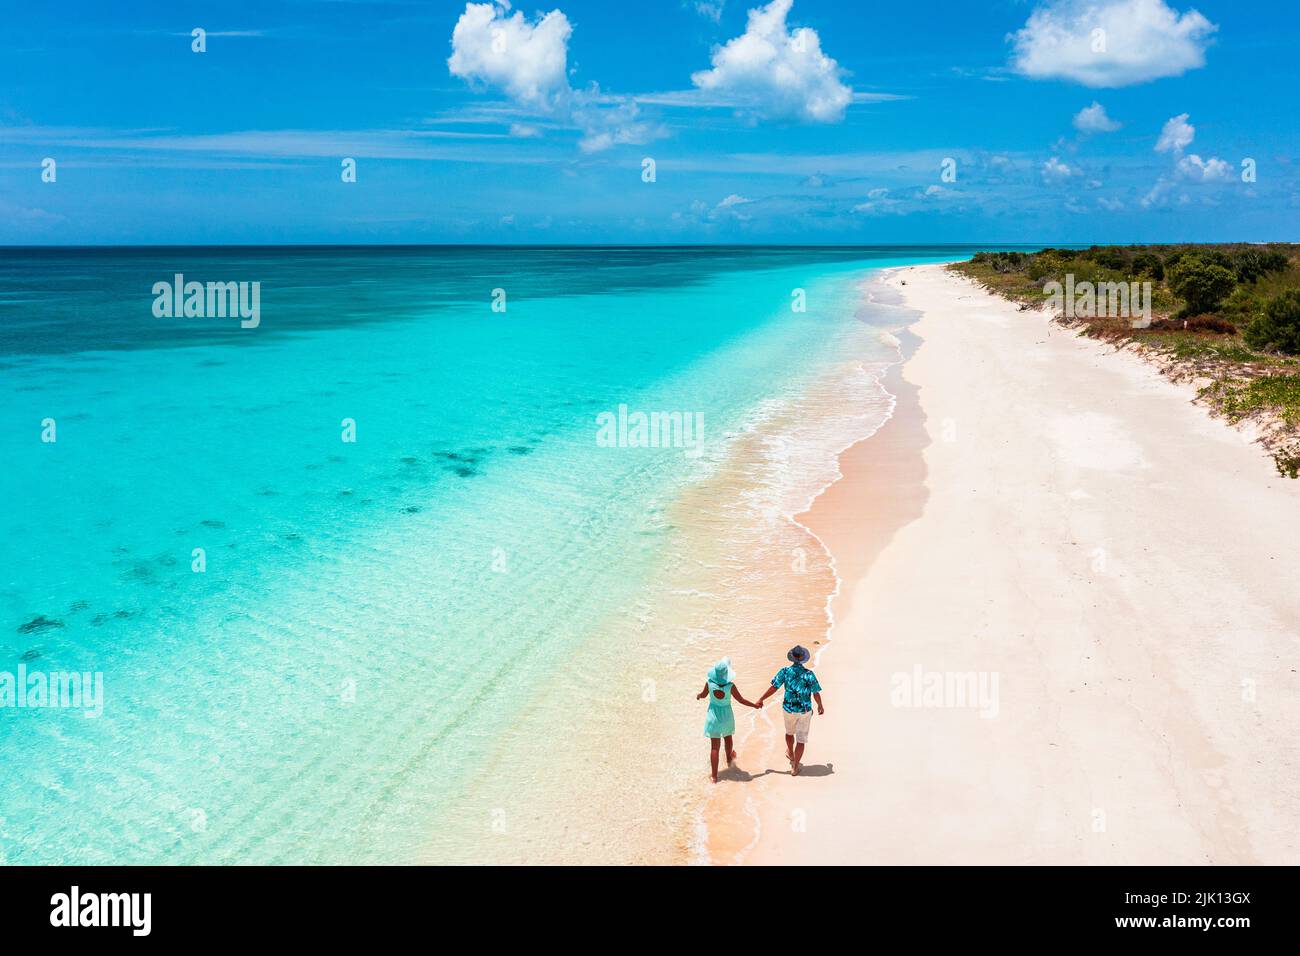 Uomo e donna che camminano a mano su una spiaggia bagnata dal mare turchese, Barbuda, Antigua e Barbuda, Indie Occidentali, Caraibi, America Centrale Foto Stock